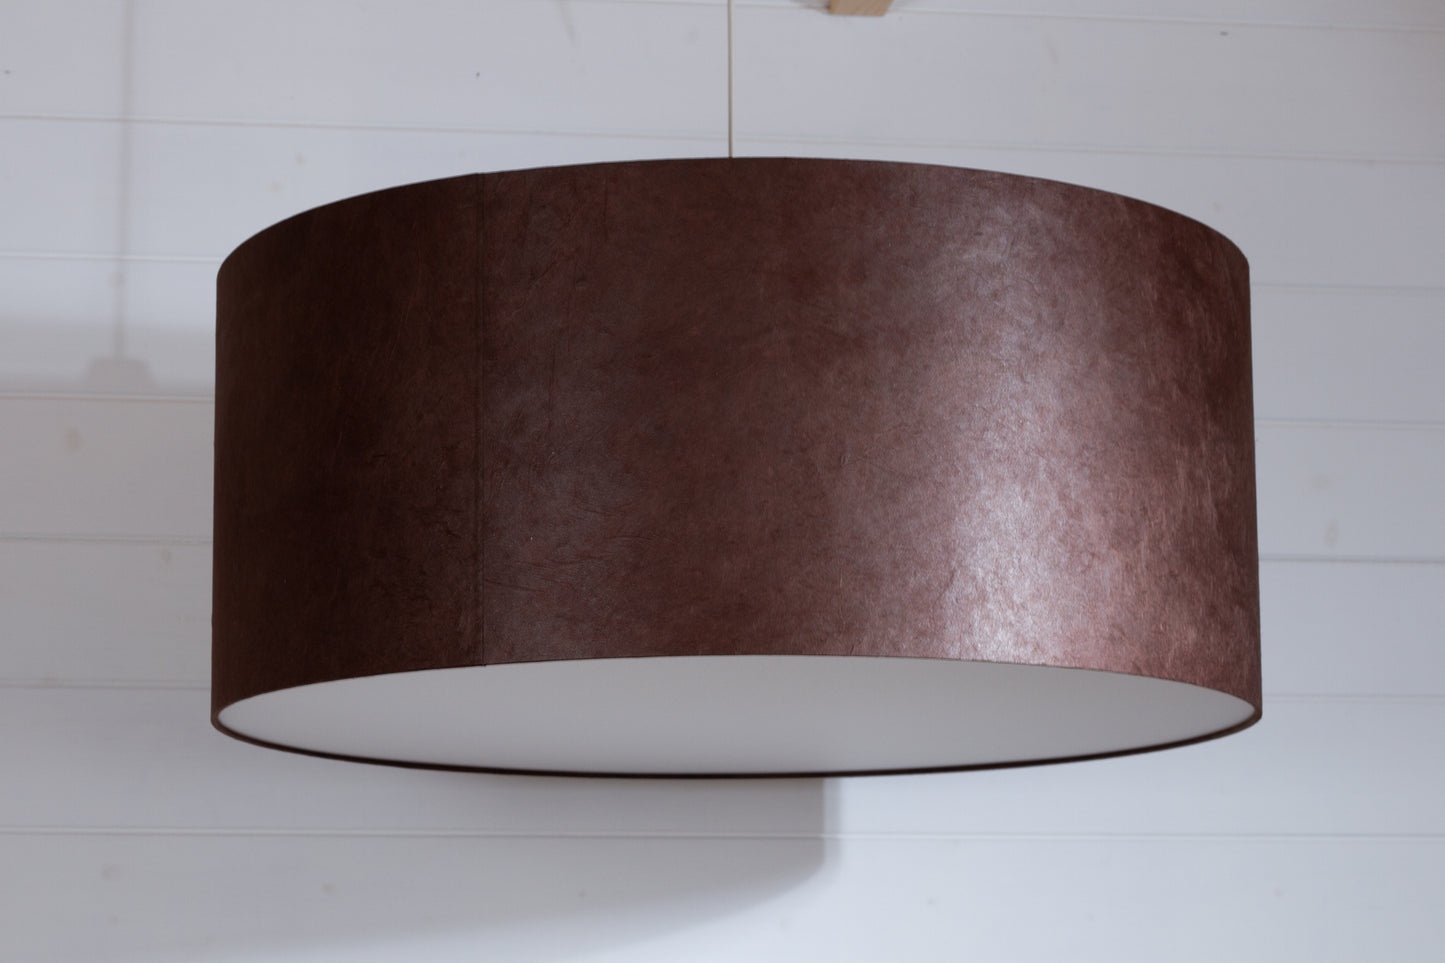 Drum Lamp Shade - P58 - Brown Lokta, 70cm(d) x 30cm(h)